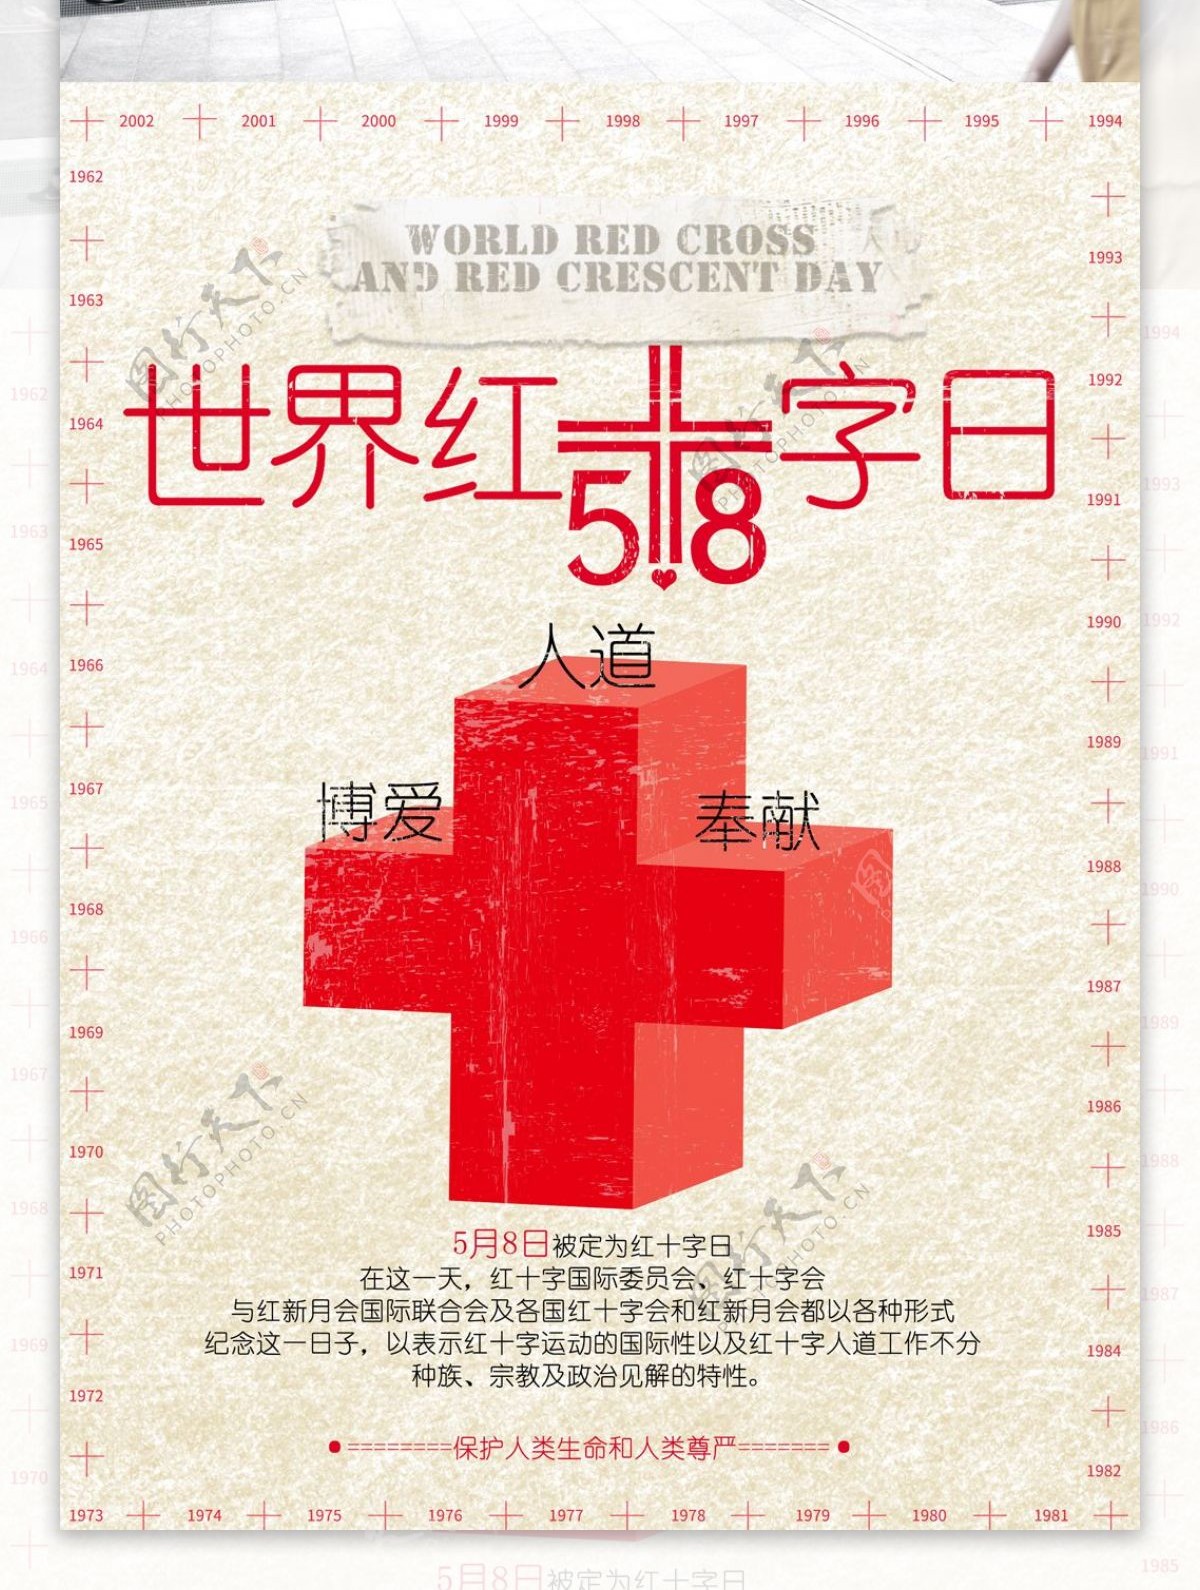 世界红十字日红新月日